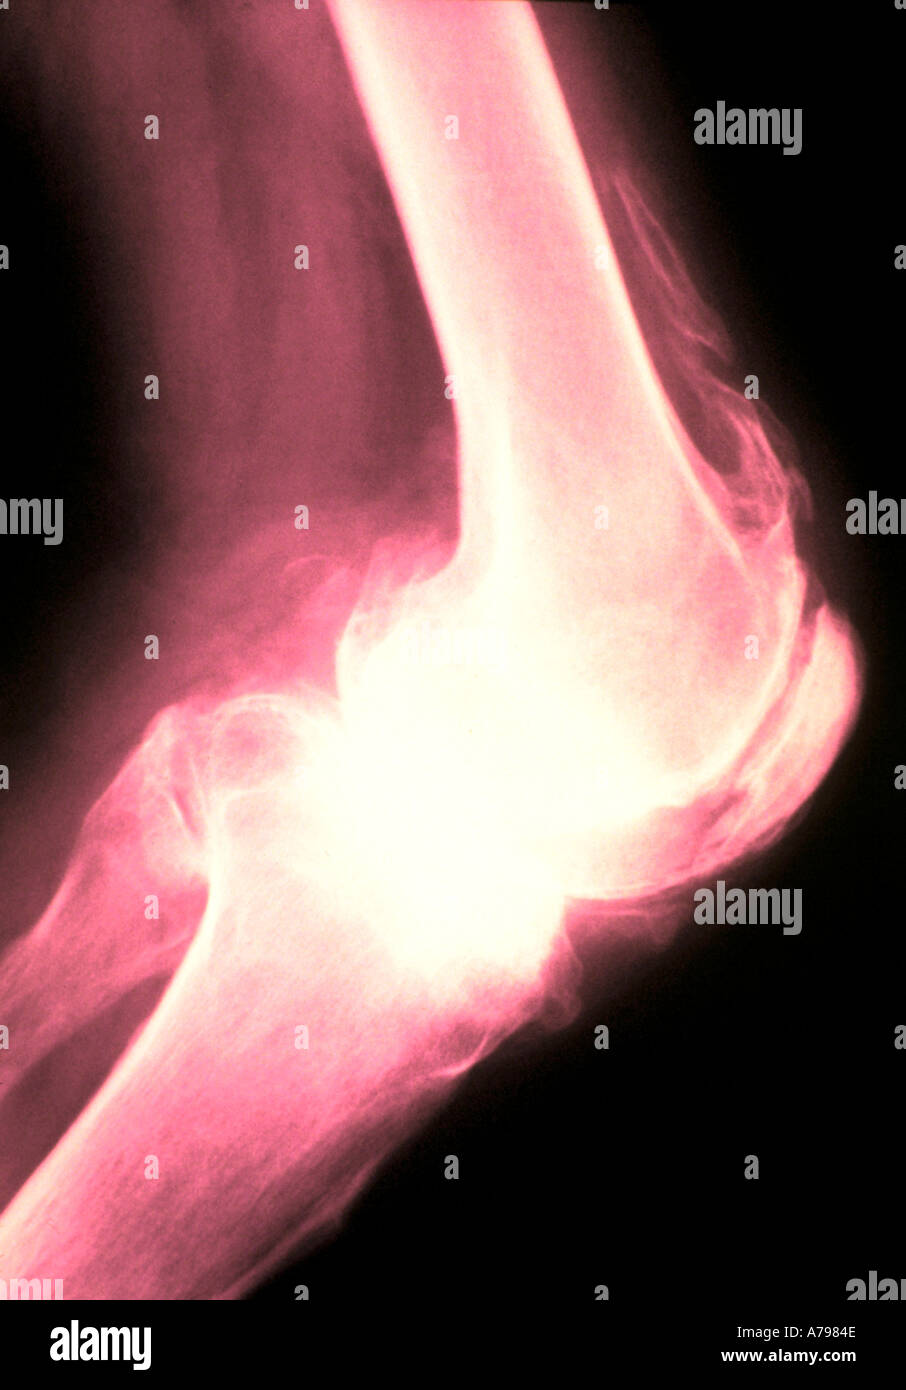 Colorati a raggi x che mostra il ginocchio artritiche Foto Stock